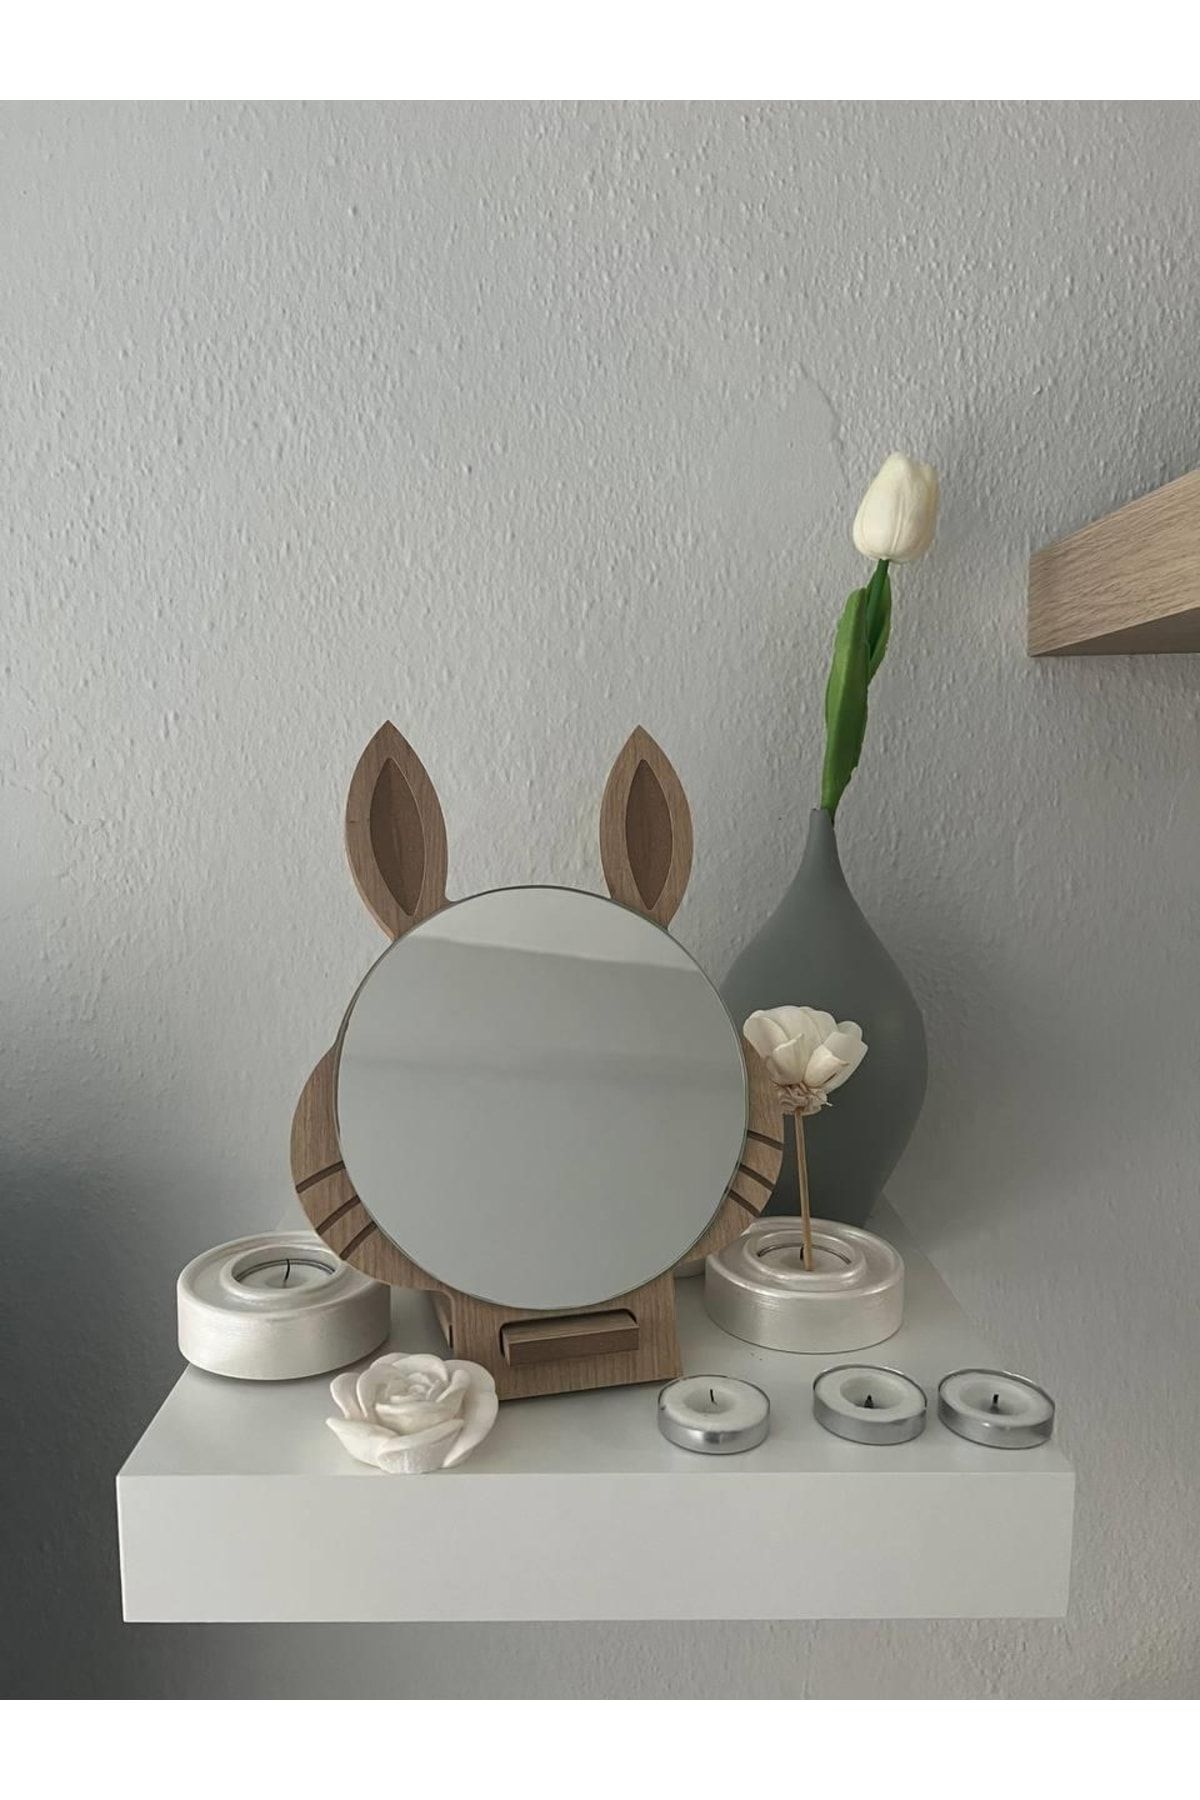 ARCHER Masaüstü Kahverengi Renk Hediyelik Dekoratif Makyaj Aynasi,tavşan Kulaklı,sevimli Ayna, Çocuk Ve Gen